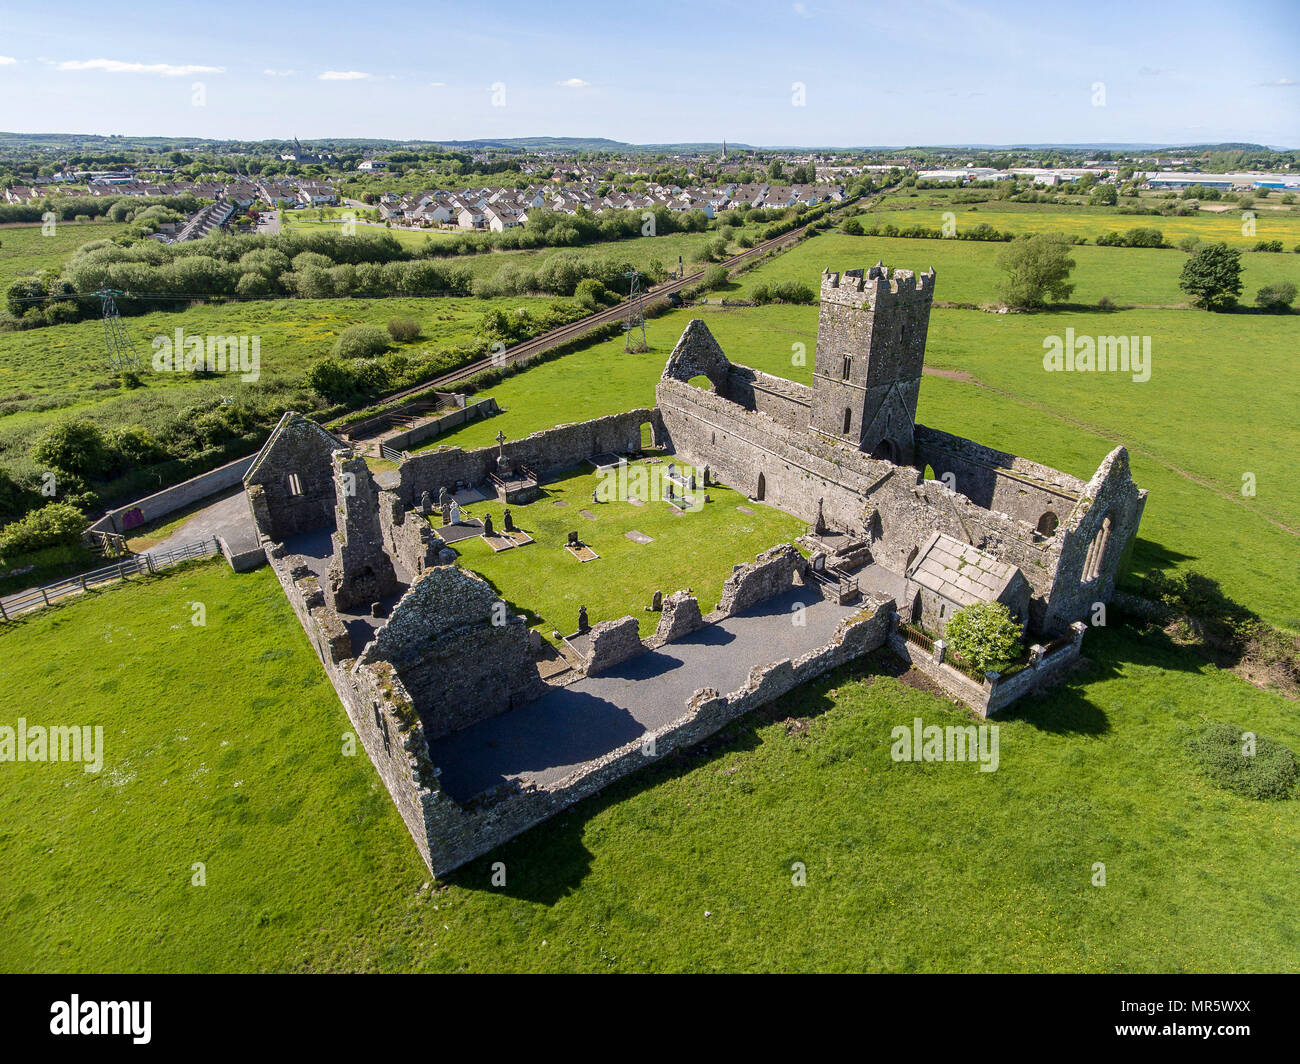 Belles anciennes ruines d'Abbaye de Clare, dans le comté de Clare, Irlande. Campagne irlandaise avec l'ancienne abbaye religieux irlandais en décomposition. Banque D'Images